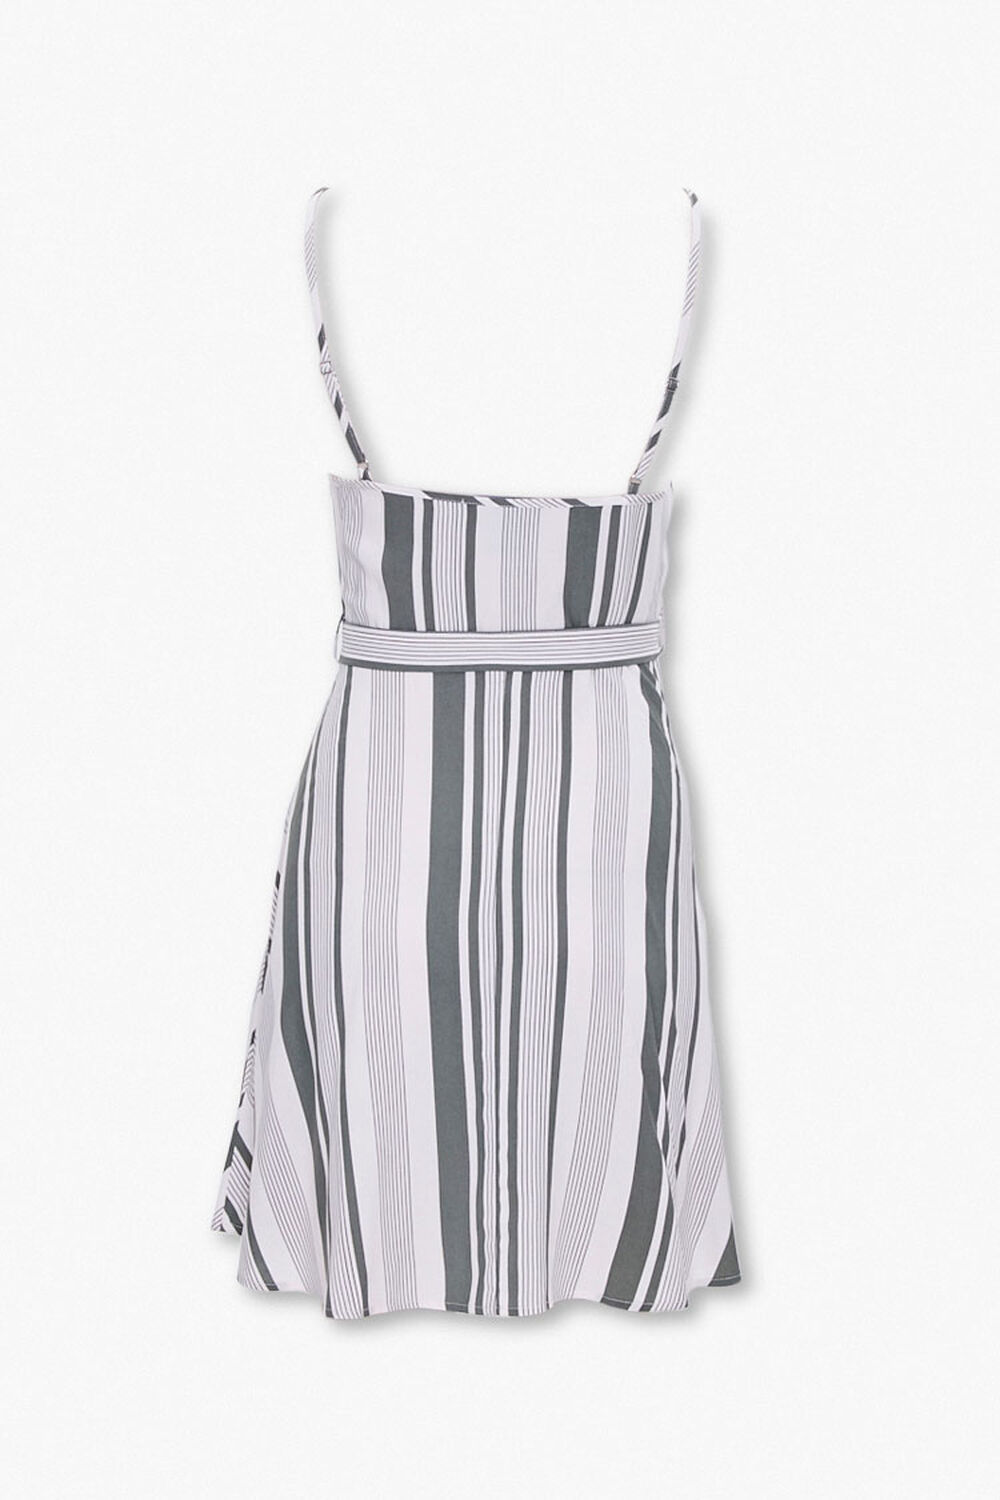 Striped Tie-Waist Dress, image 3